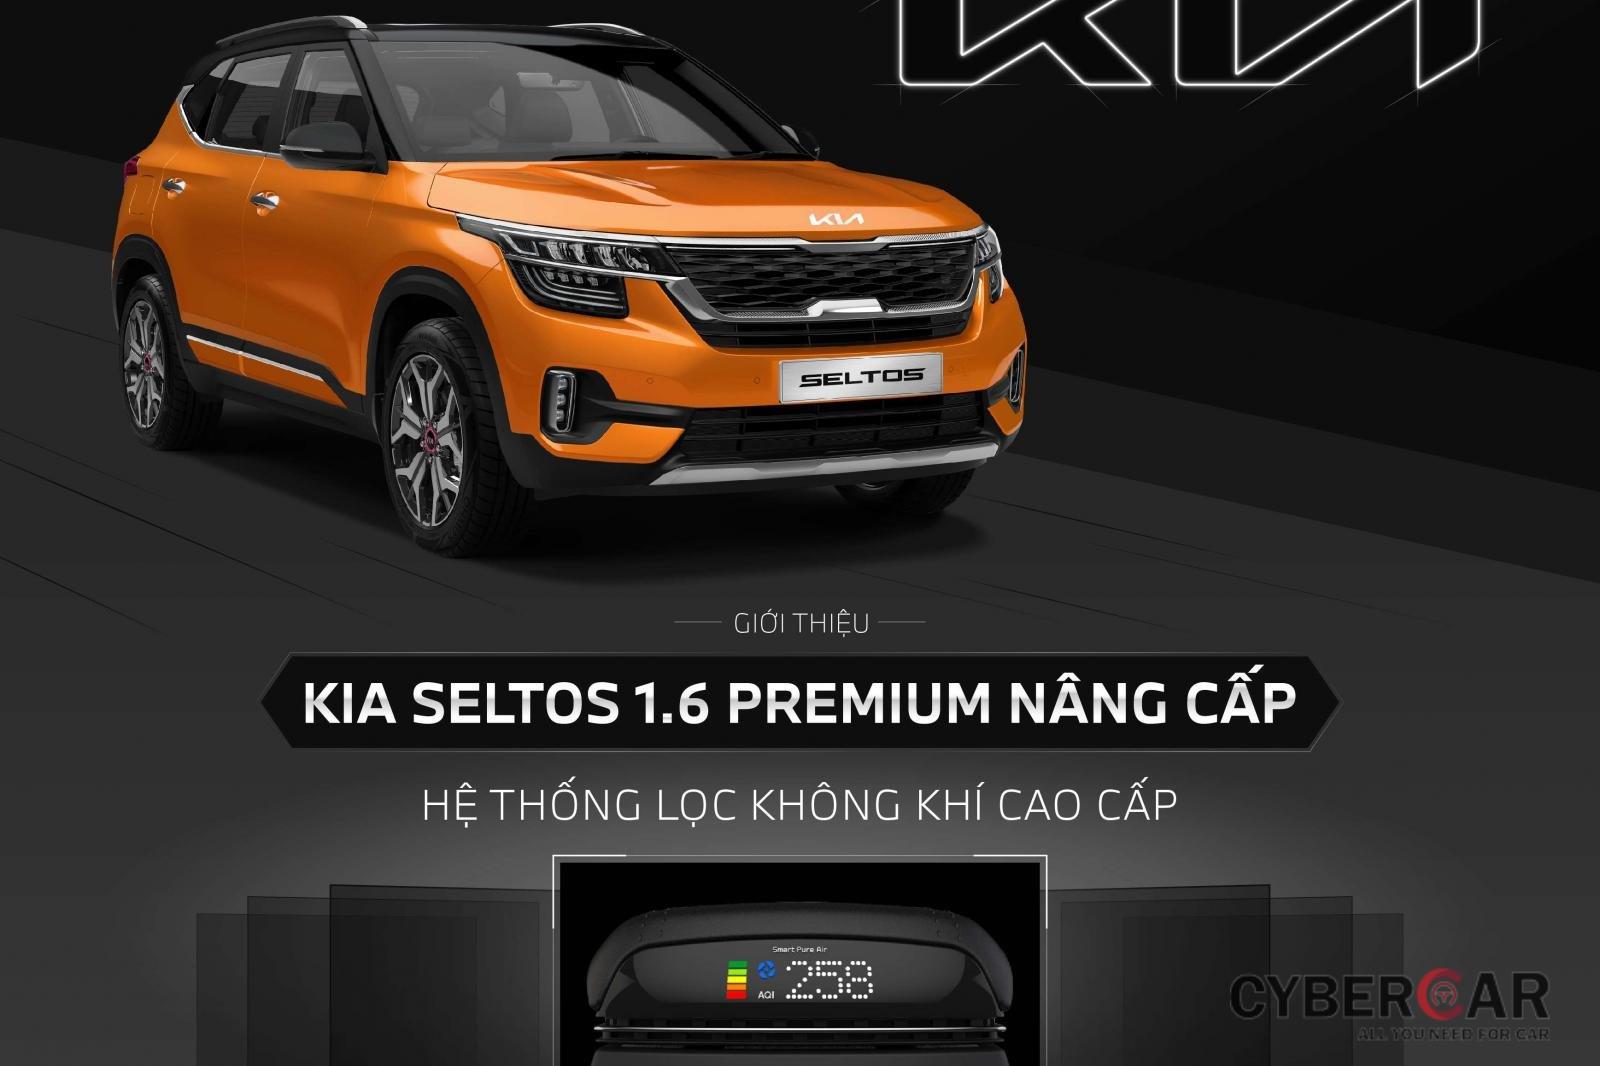 Hệ thống lọc không khí trên xe Kia Seltos 1.6 Premium được điều khiển thông qua màn hình giải trí đa phương tiện.